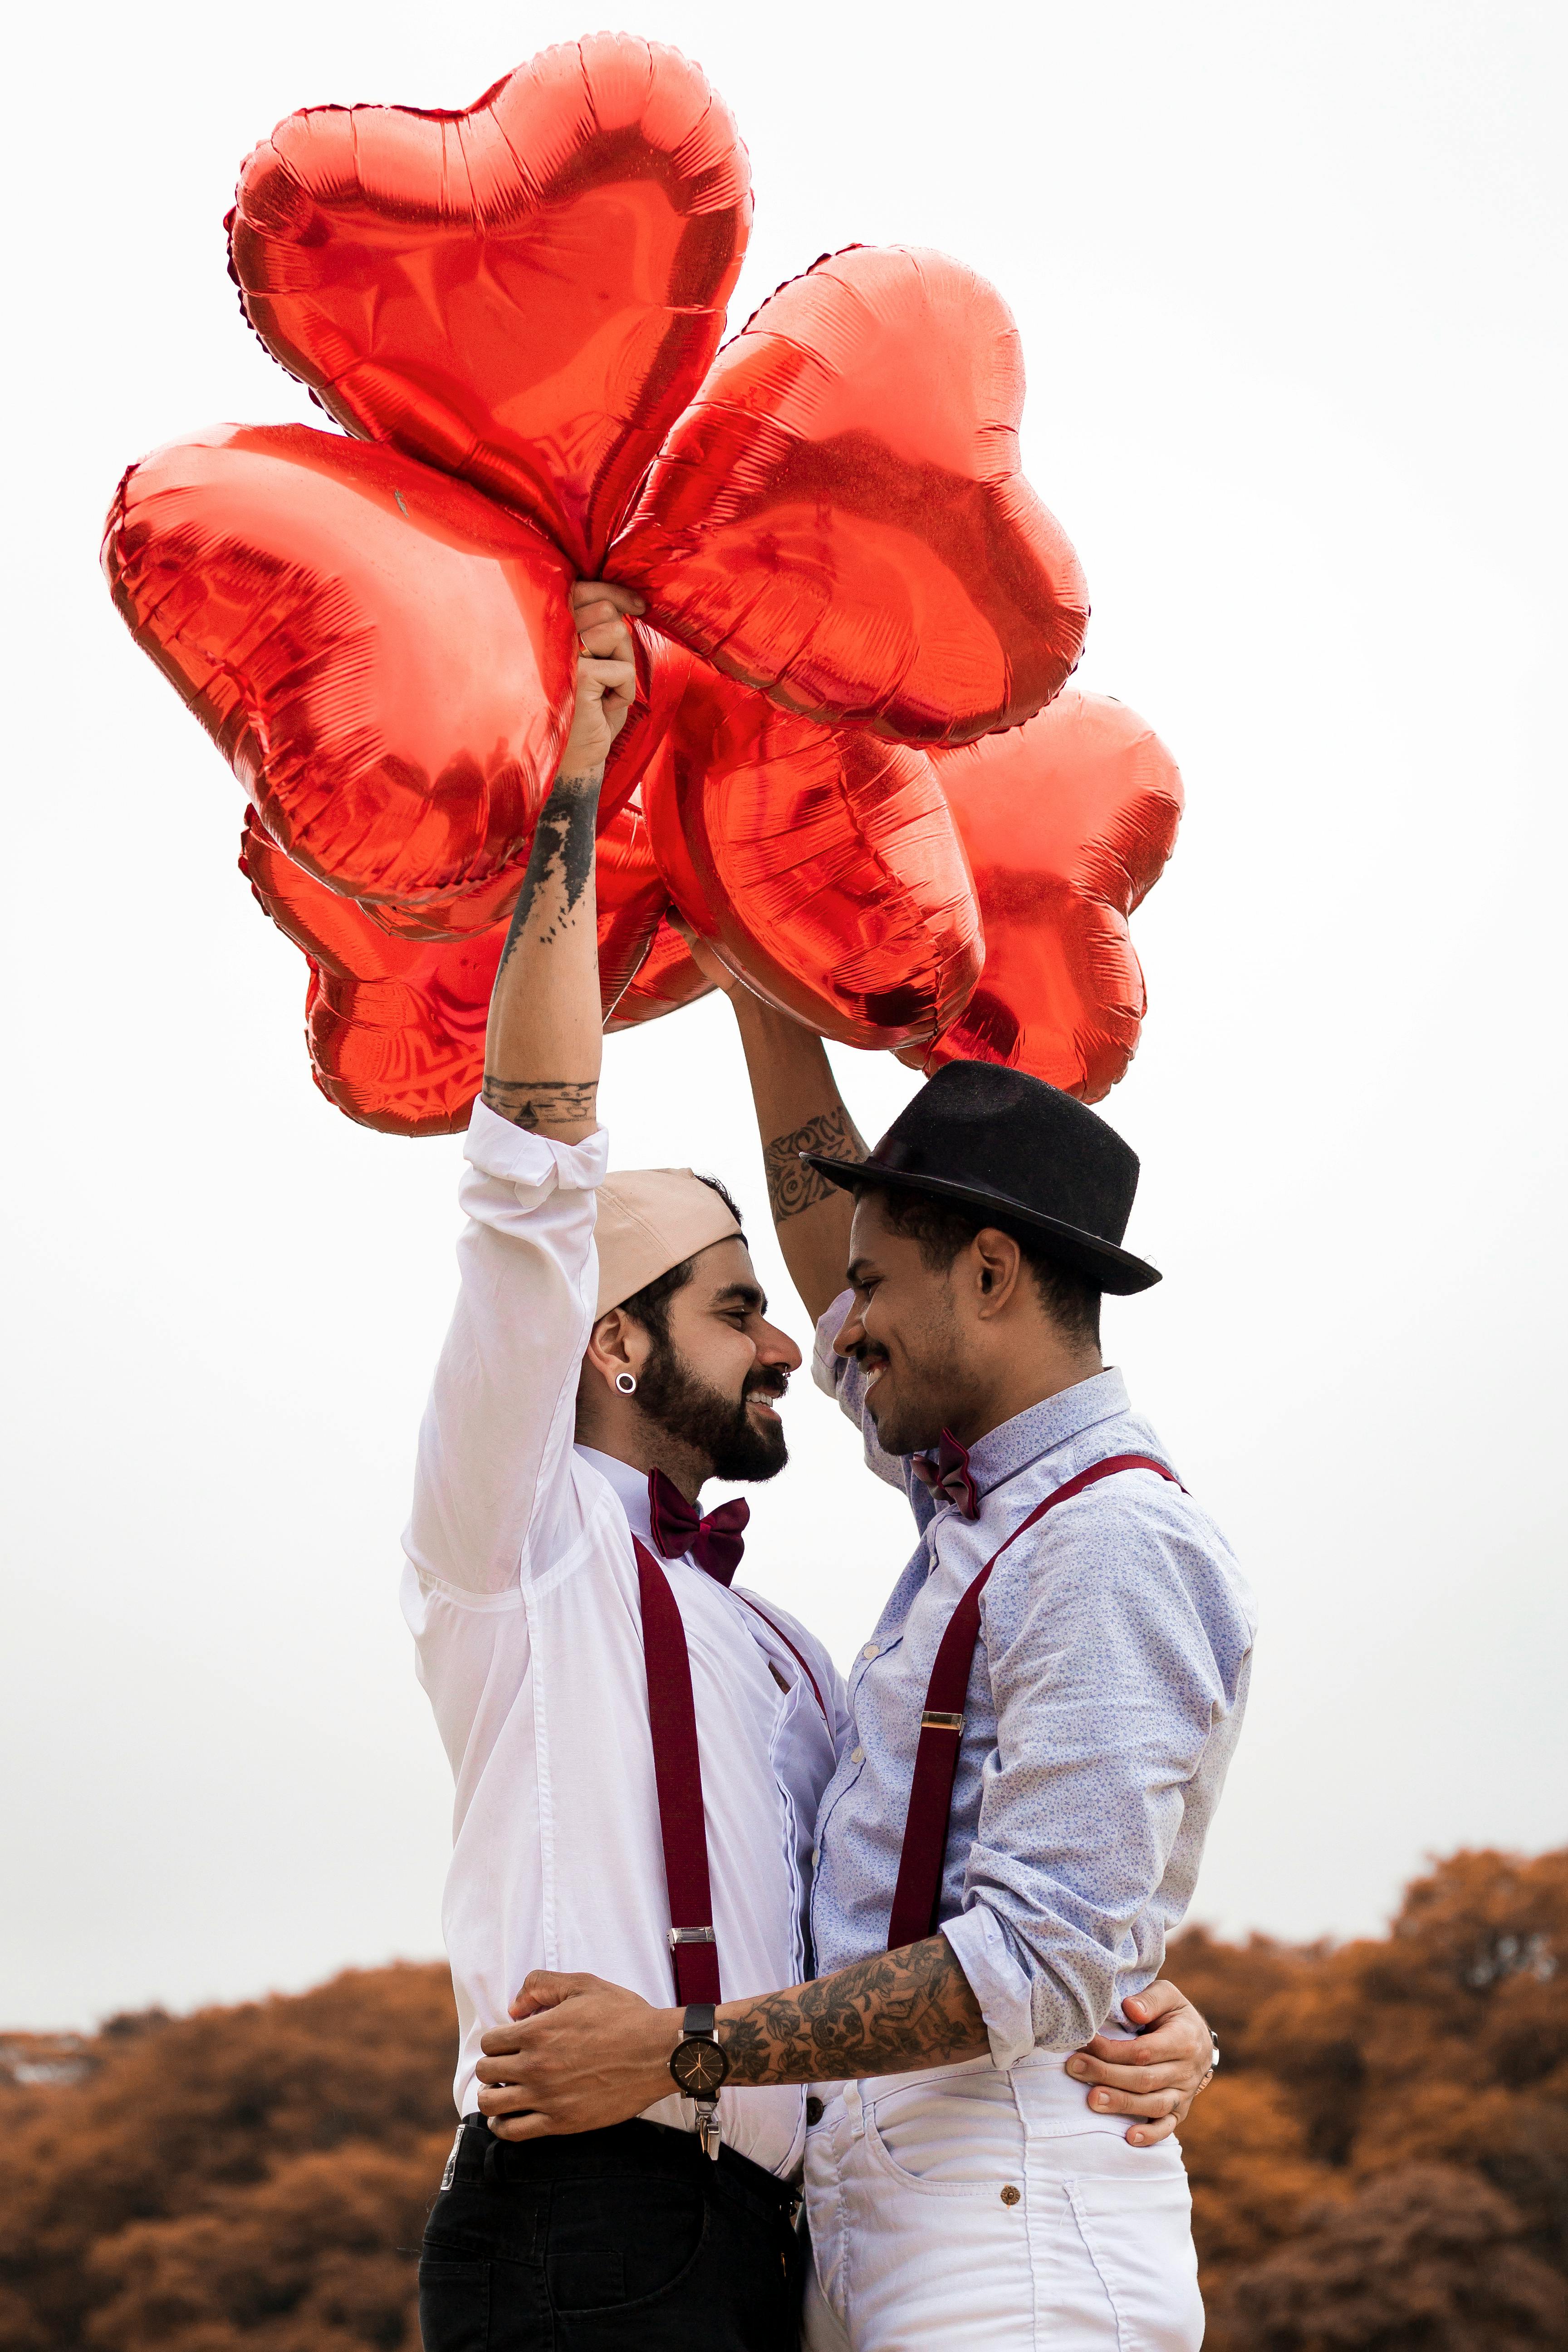 Deux hommes souriant et s'embrassant en brandissant des ballons en forme de cœur | Source : Pexels